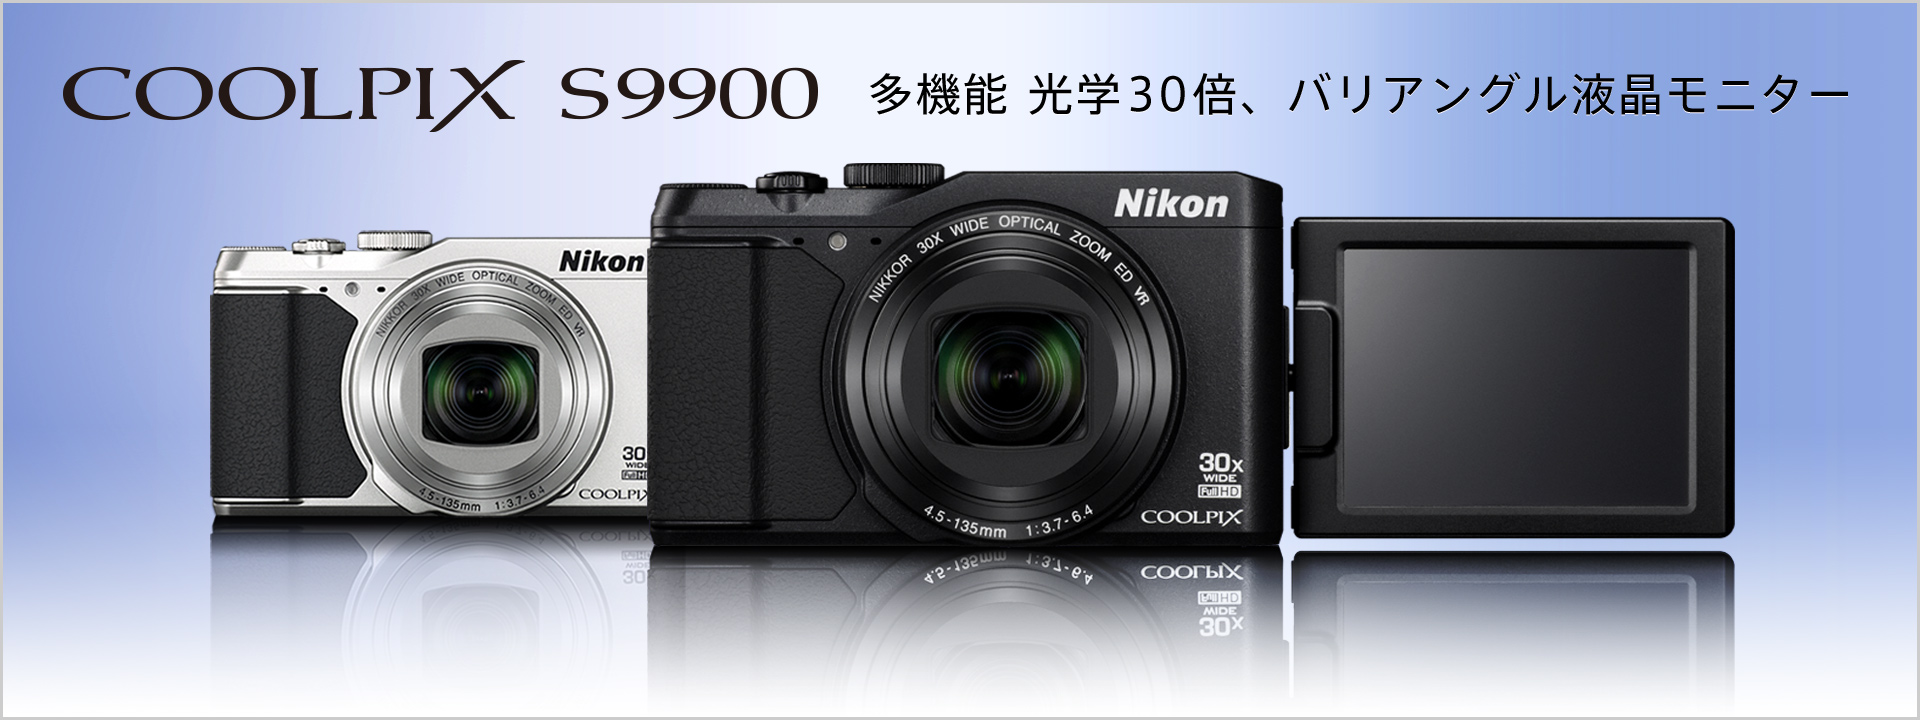 Nikonコンパクトデジタルカメラ